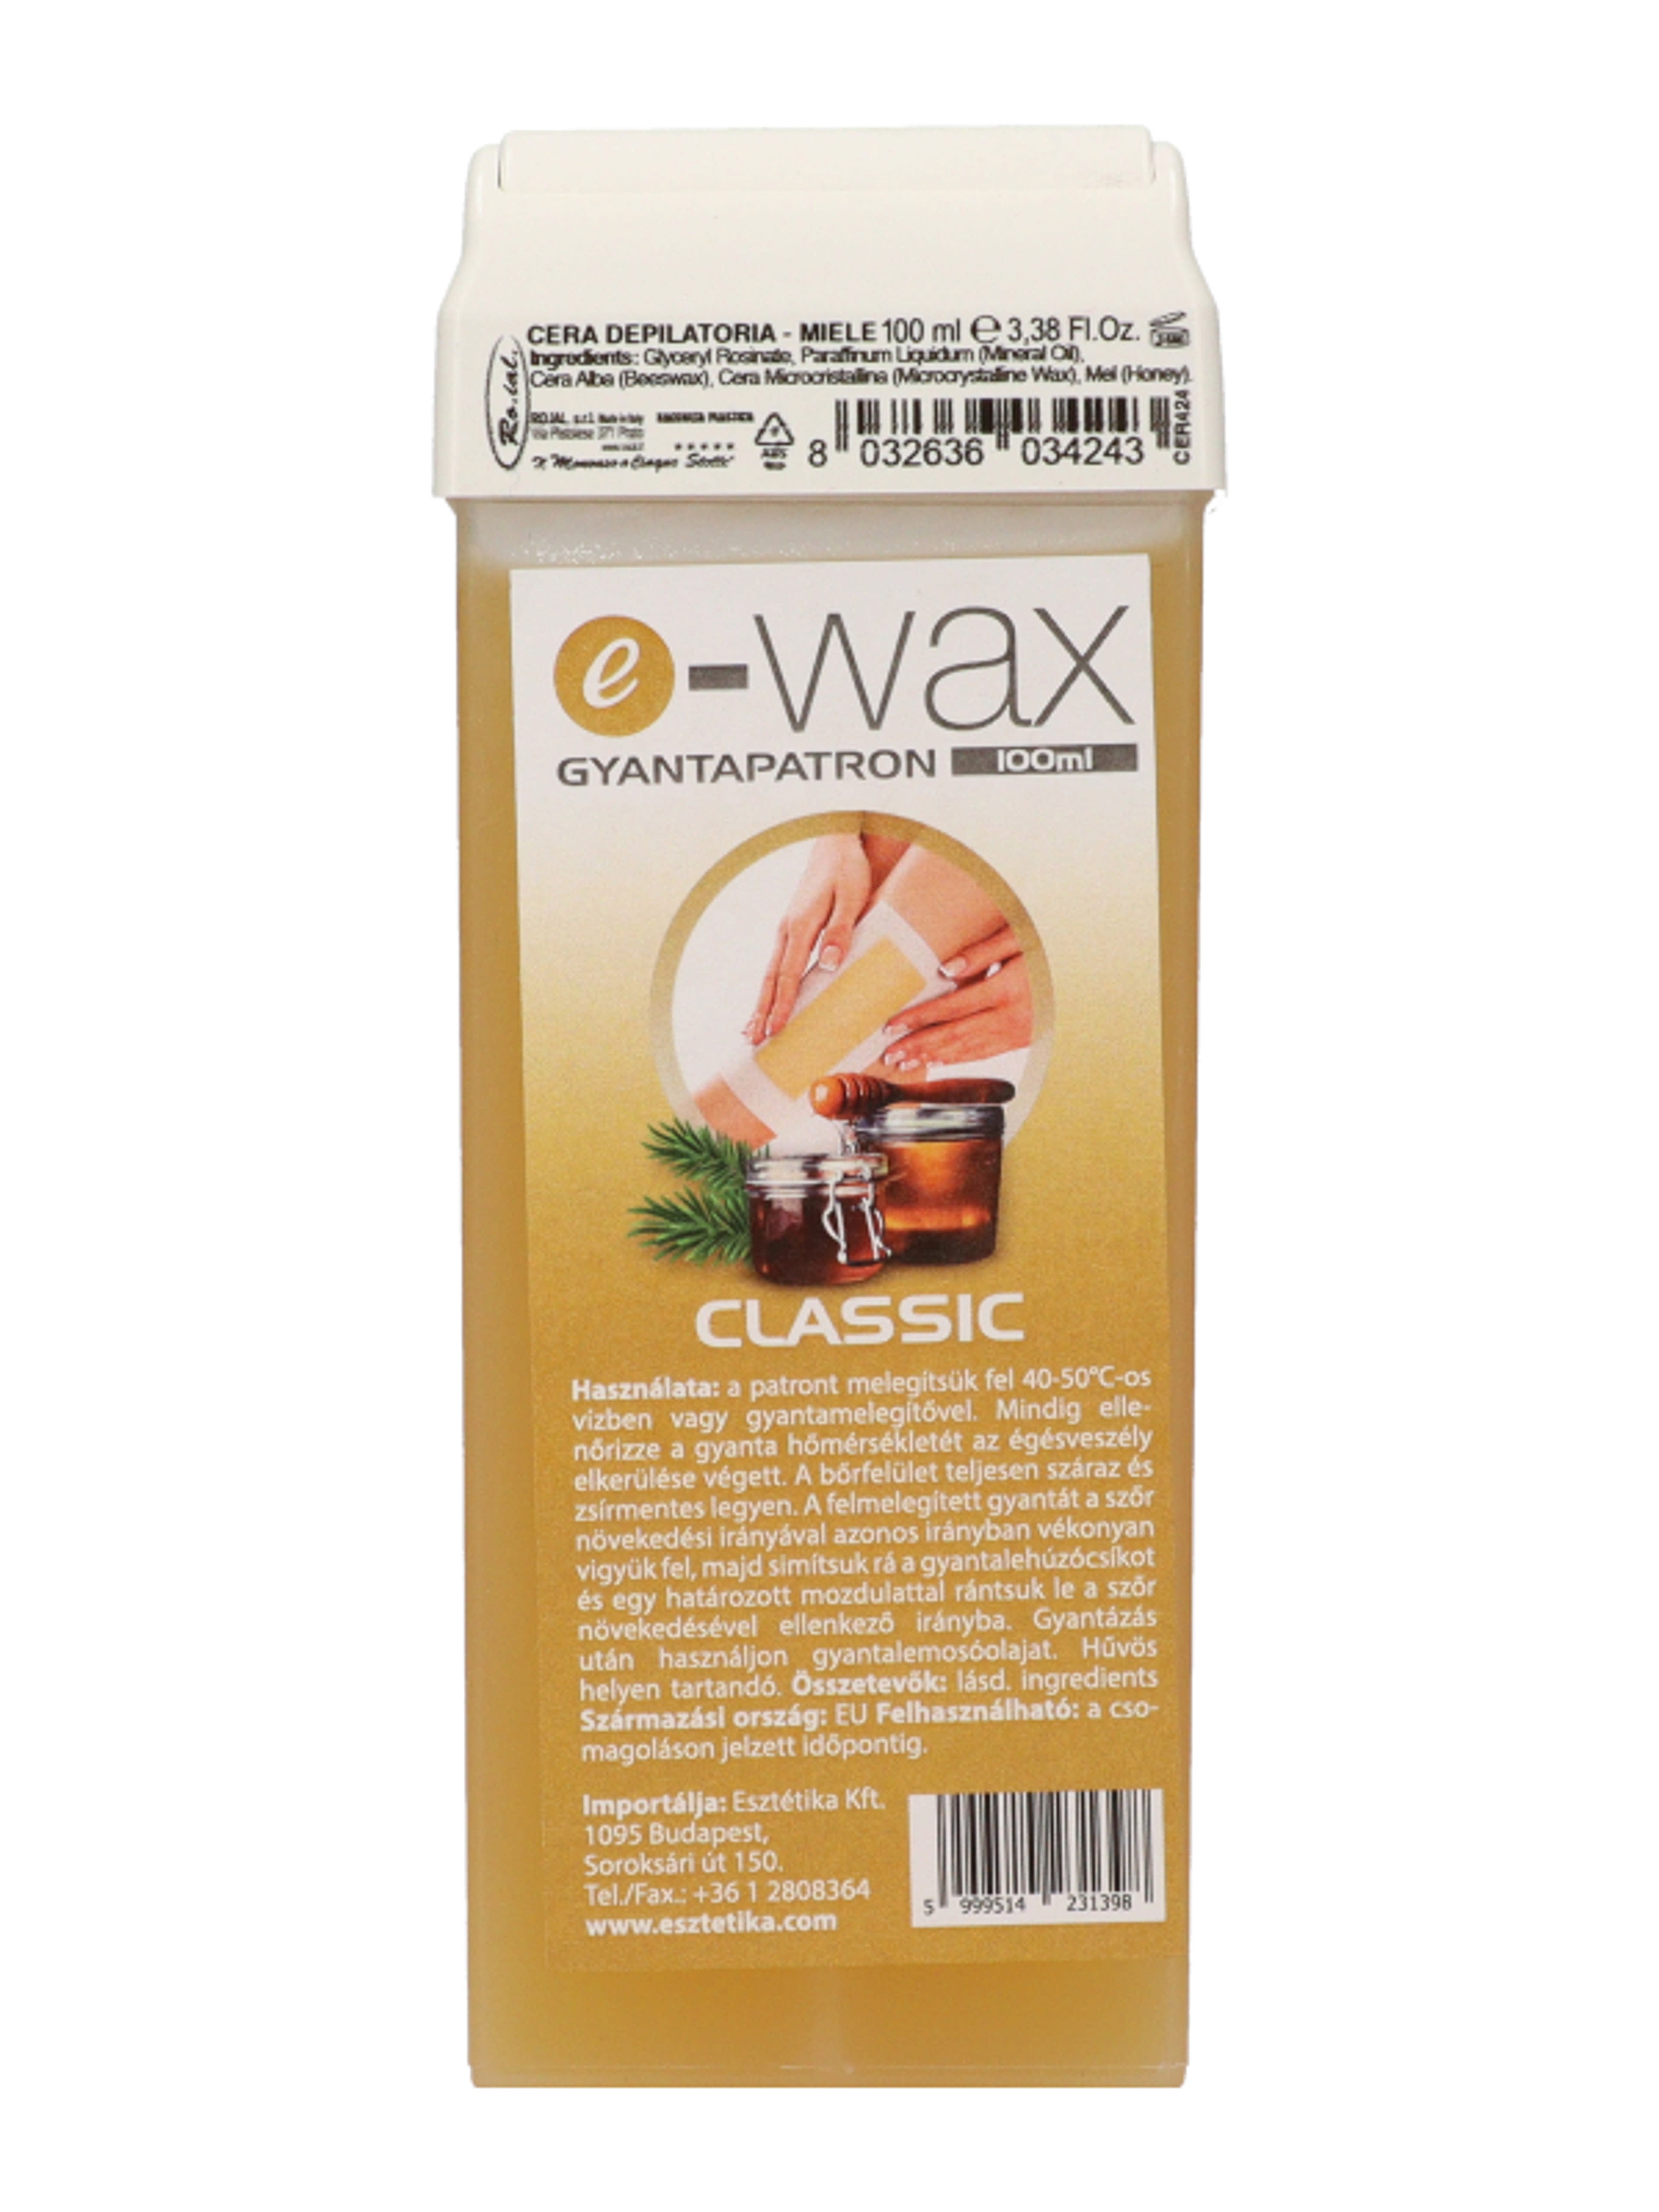 E-Wax gyantapatron Classic - 100 ml-2